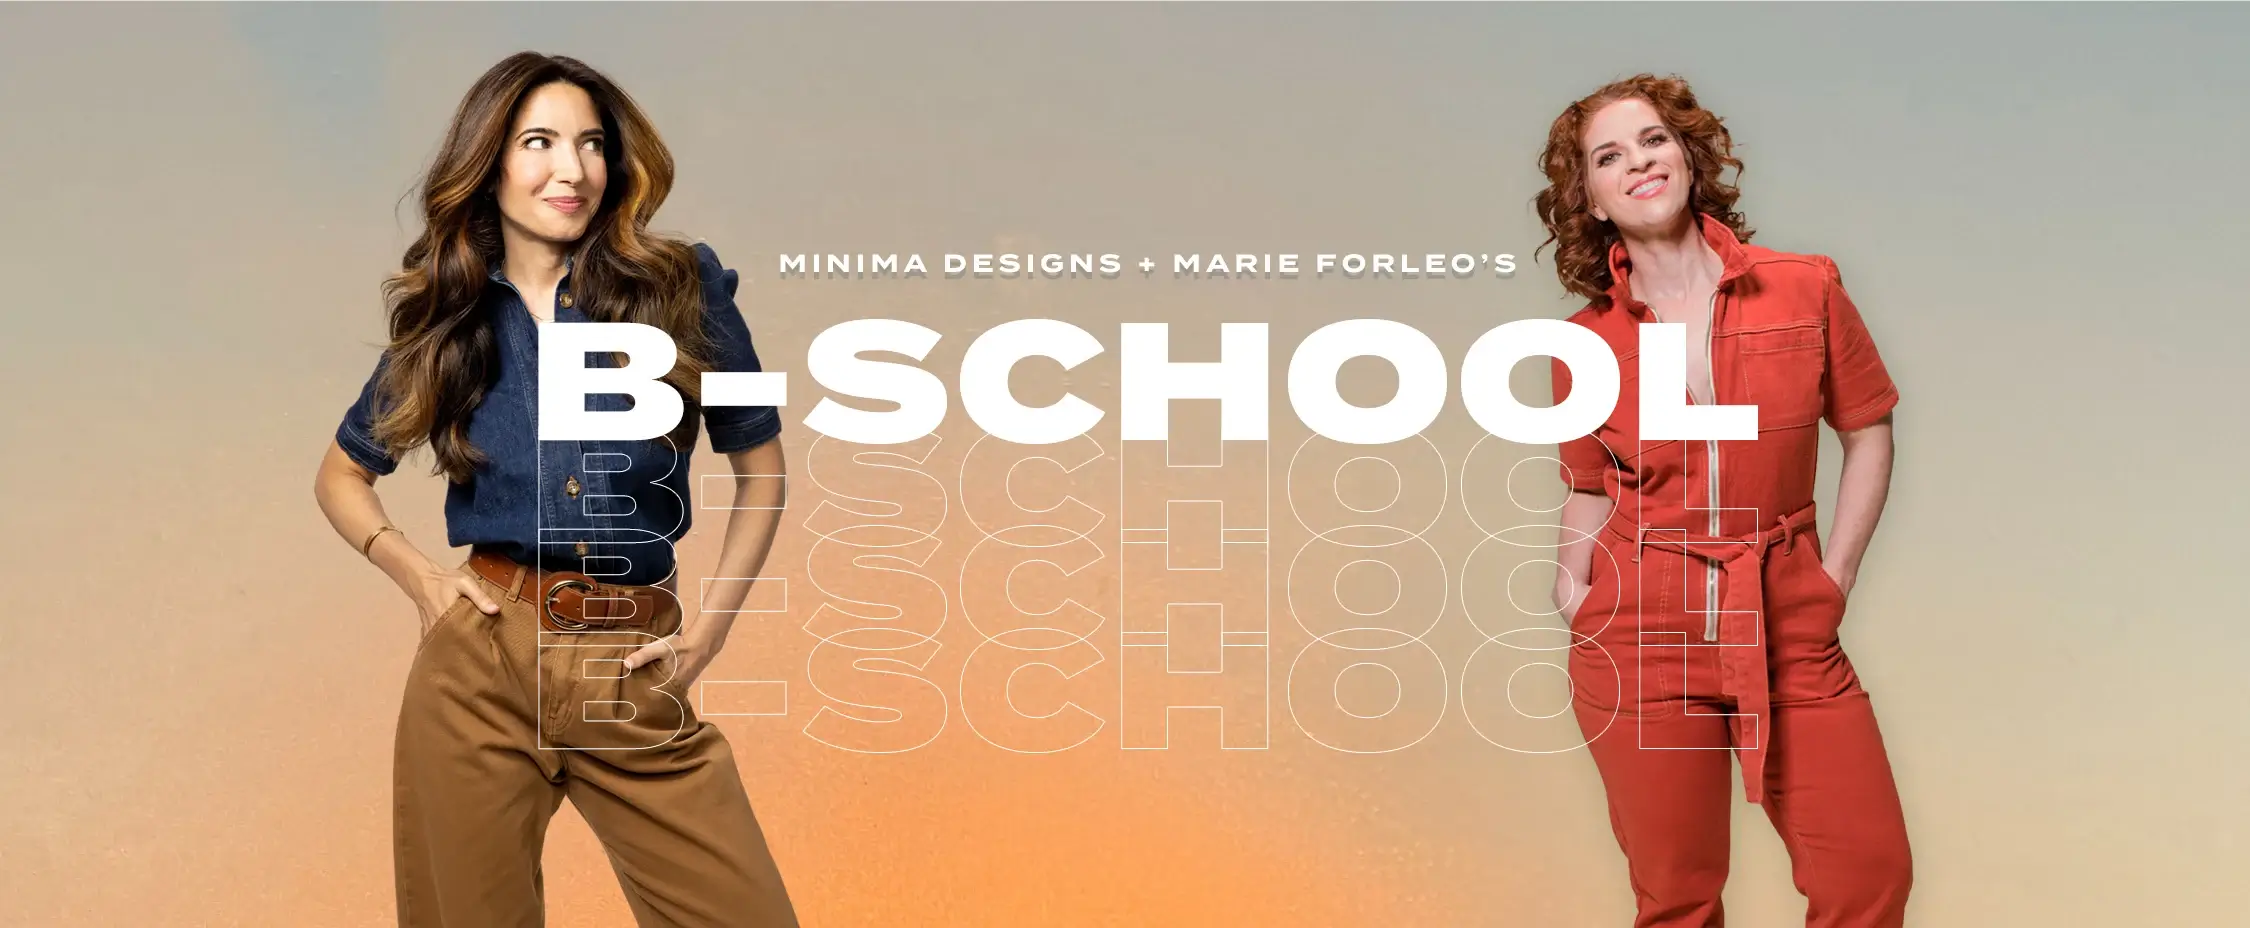 minima designs b-school affiliate bonus 